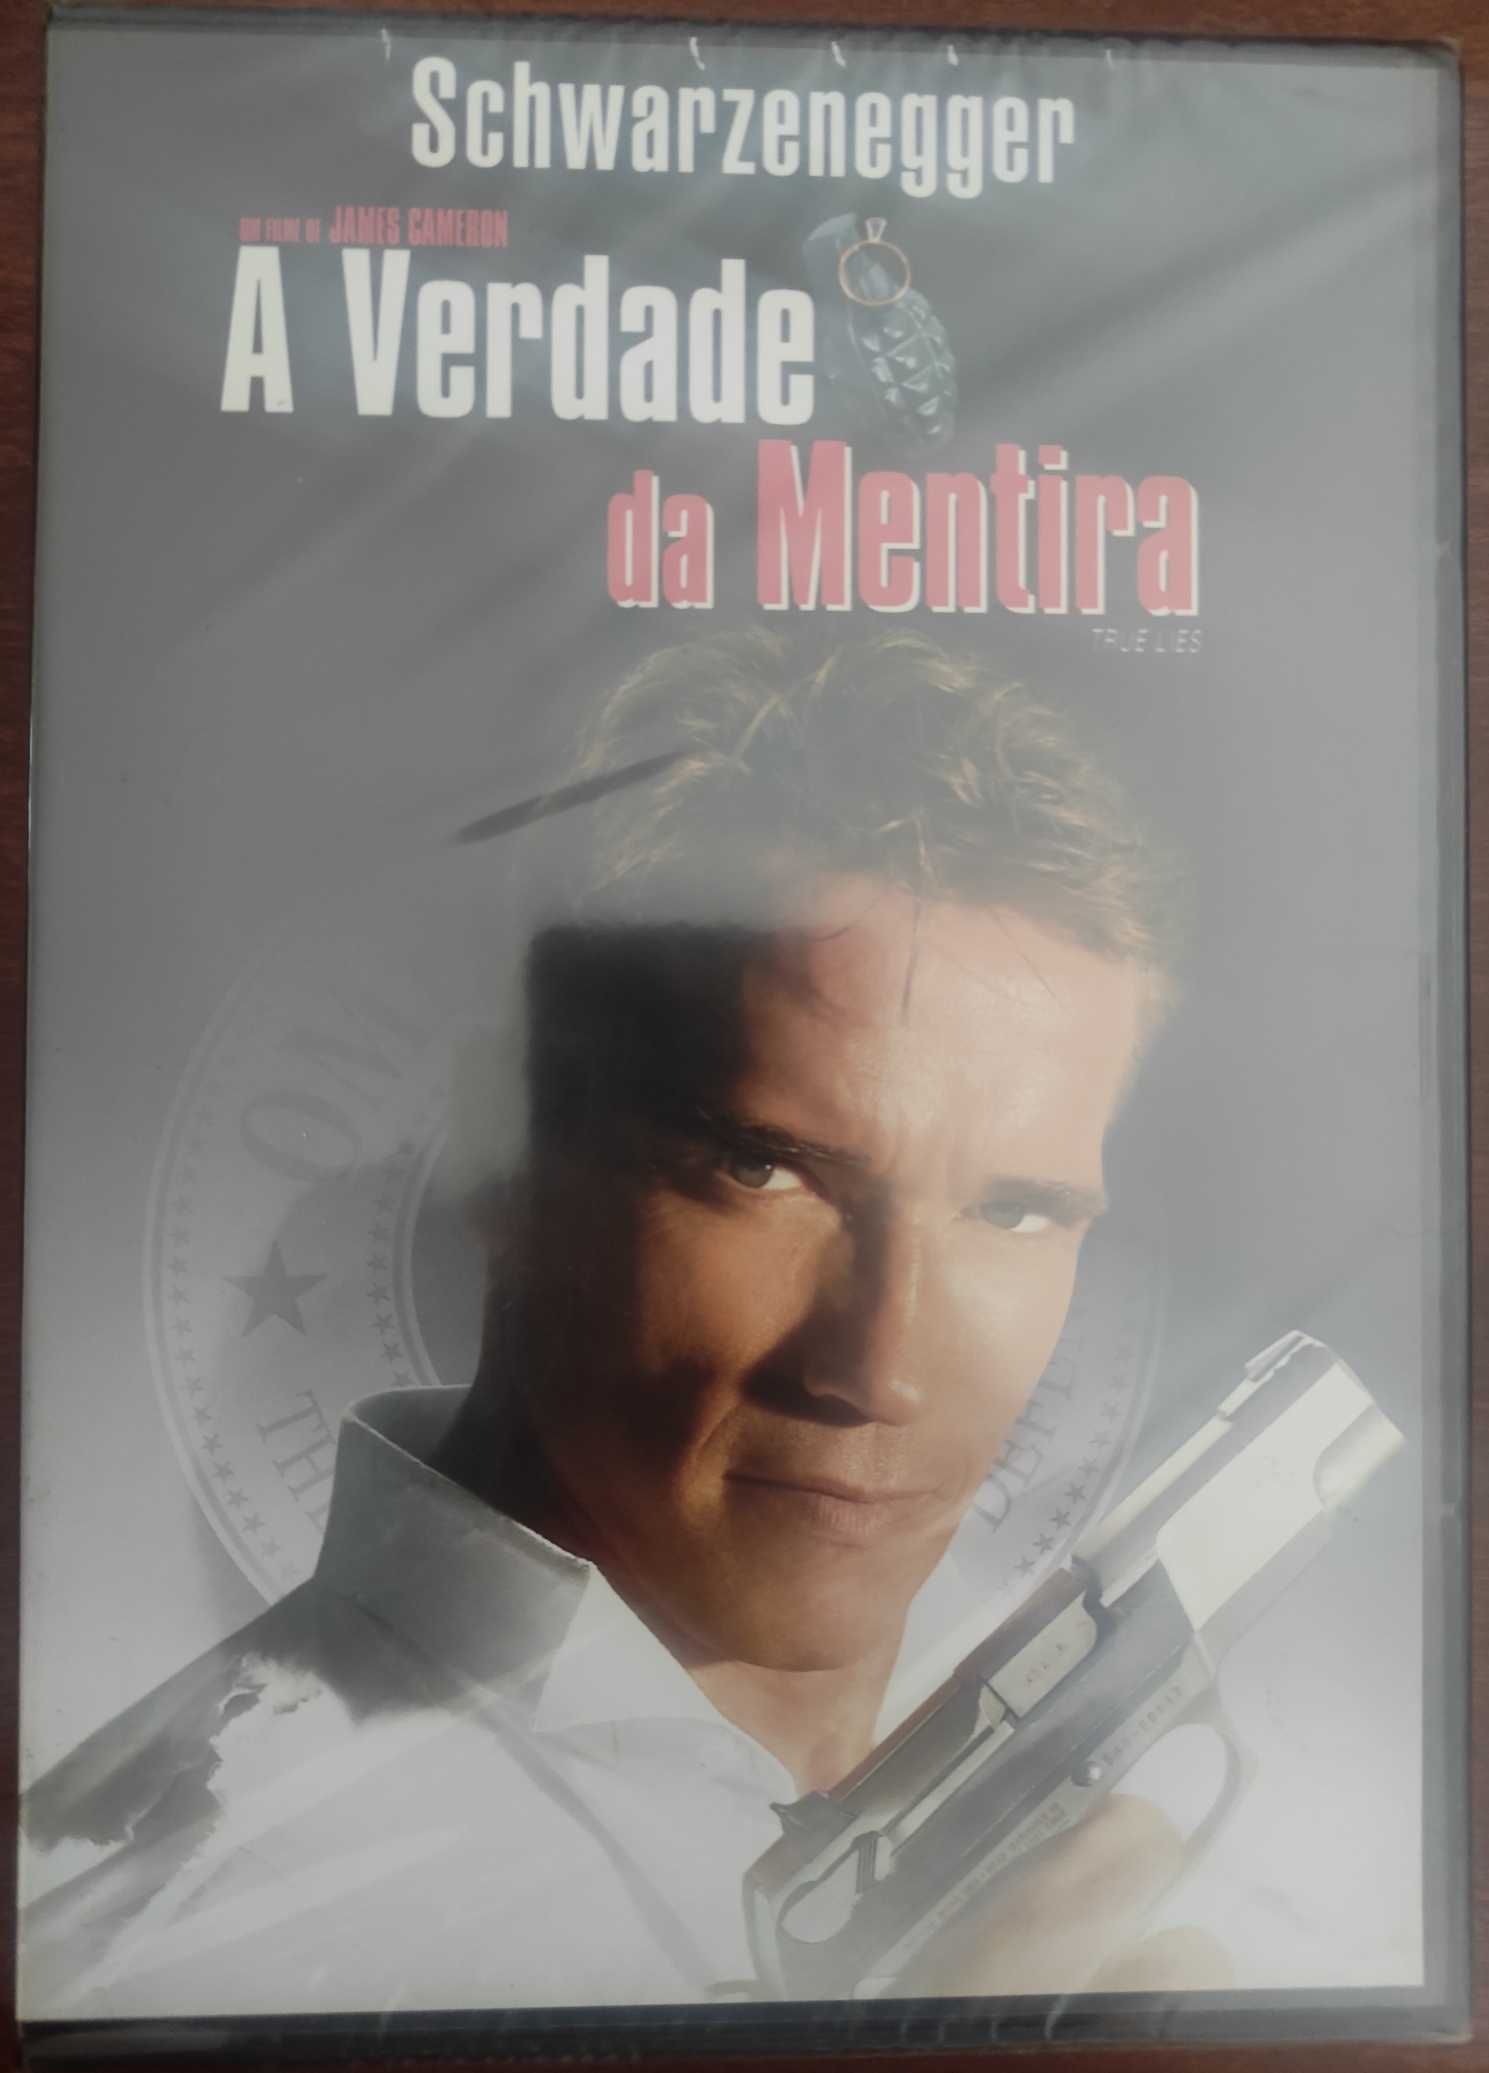 A Verdade da Mentira - True Lies - 1994 - DVD